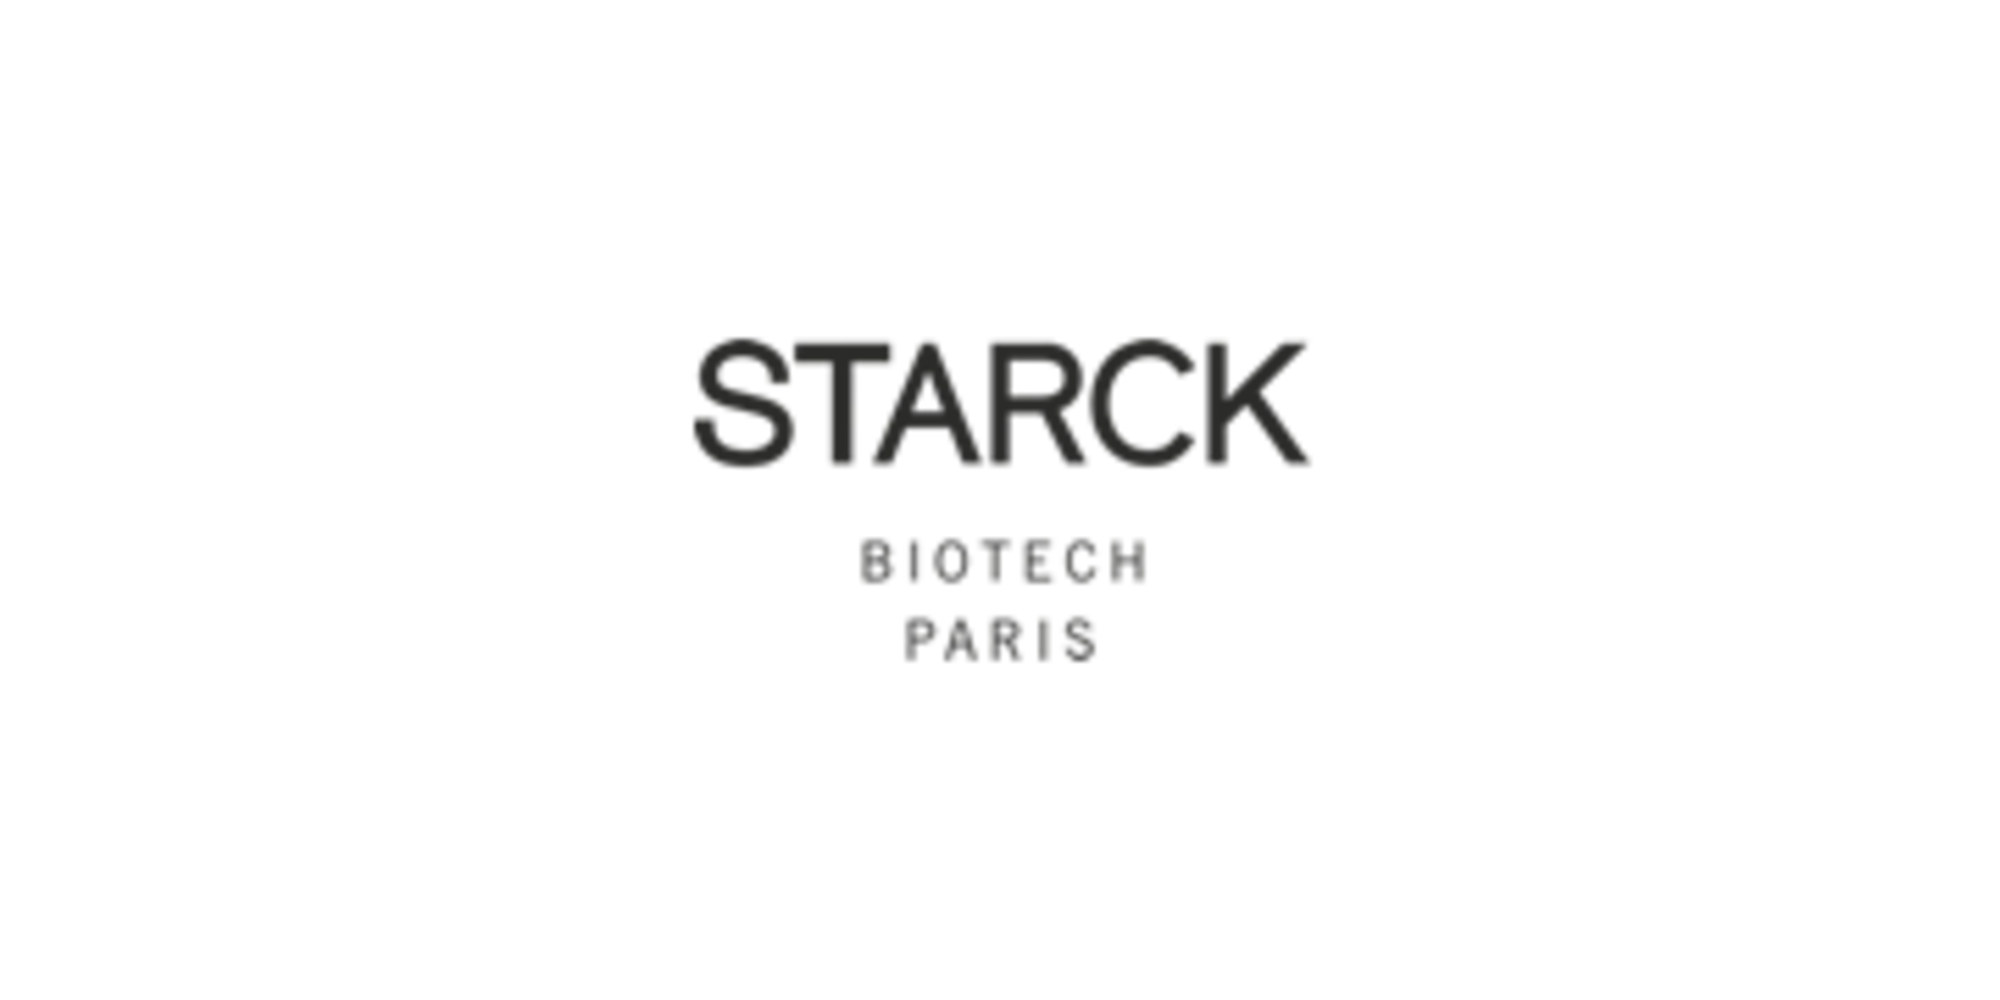 Starck logo